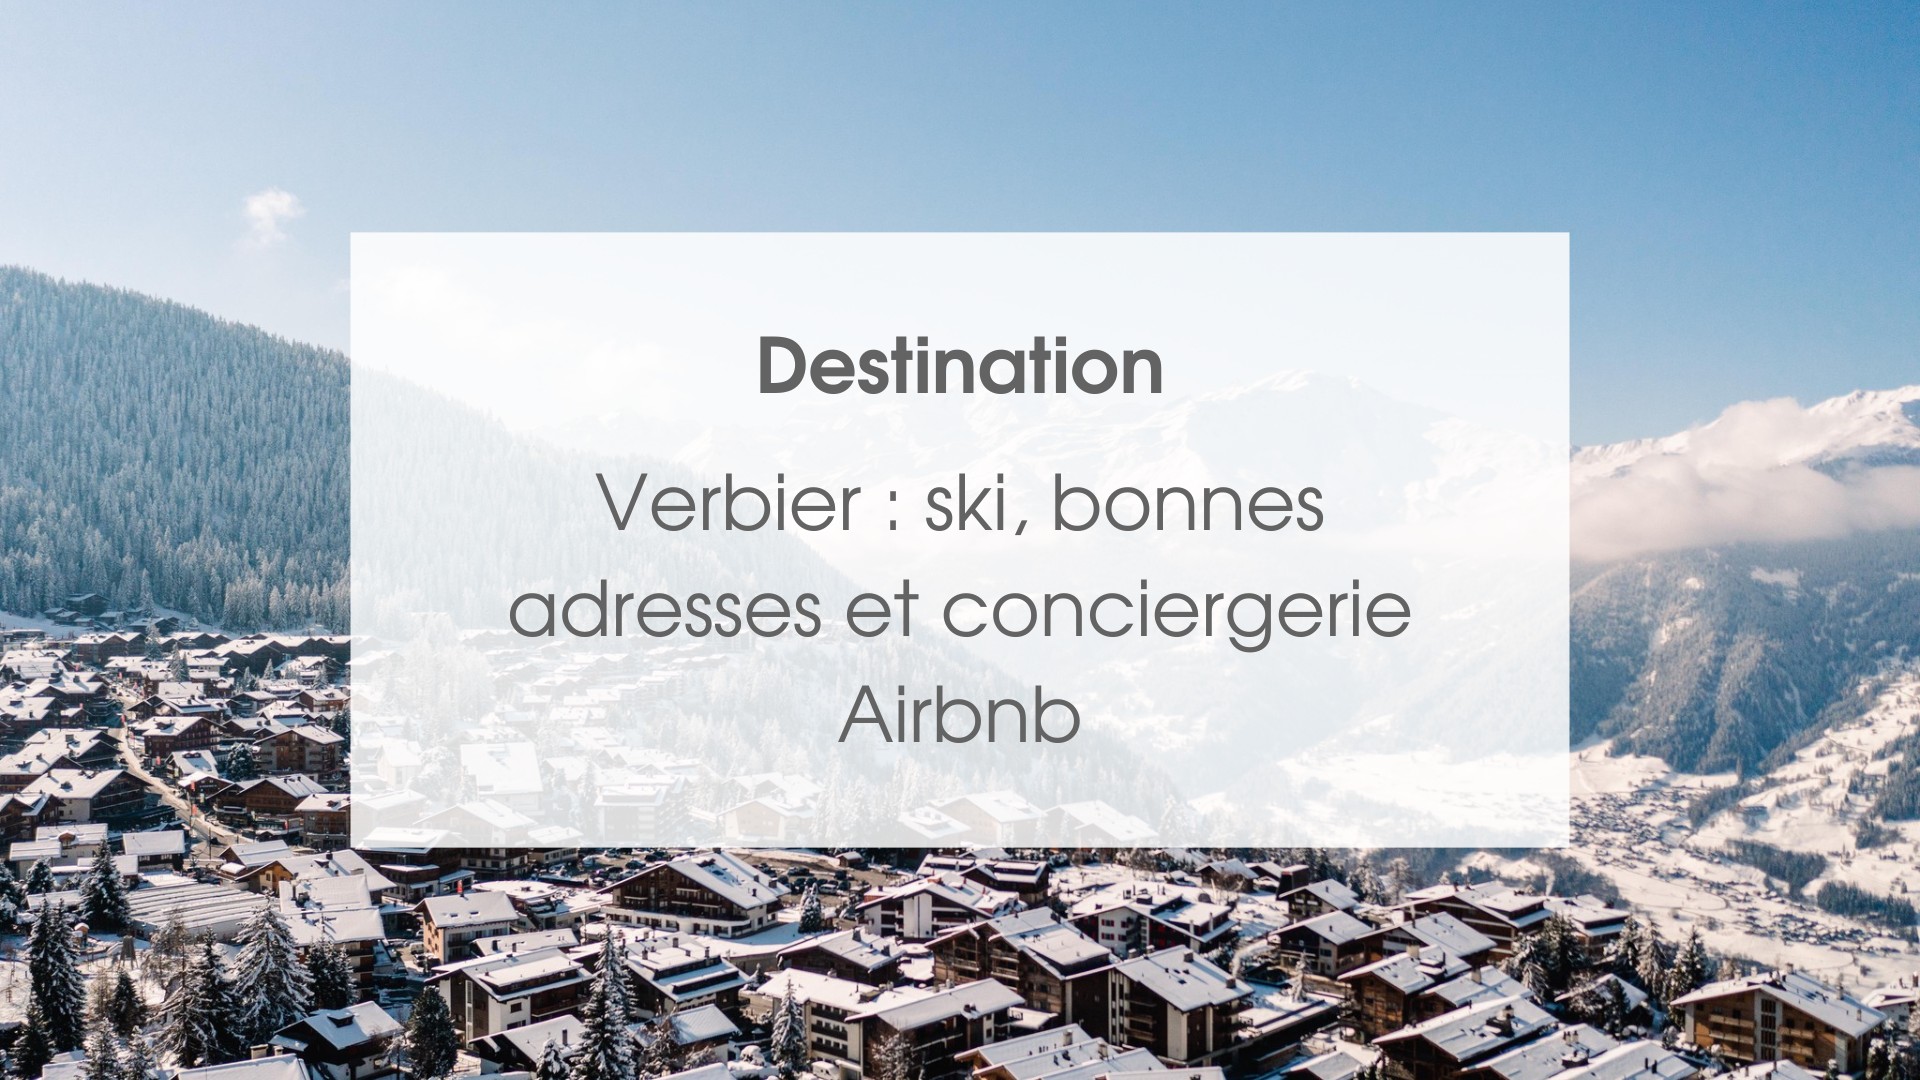 Verbier : ski, bonnes adresses et conciergerie Airbnb